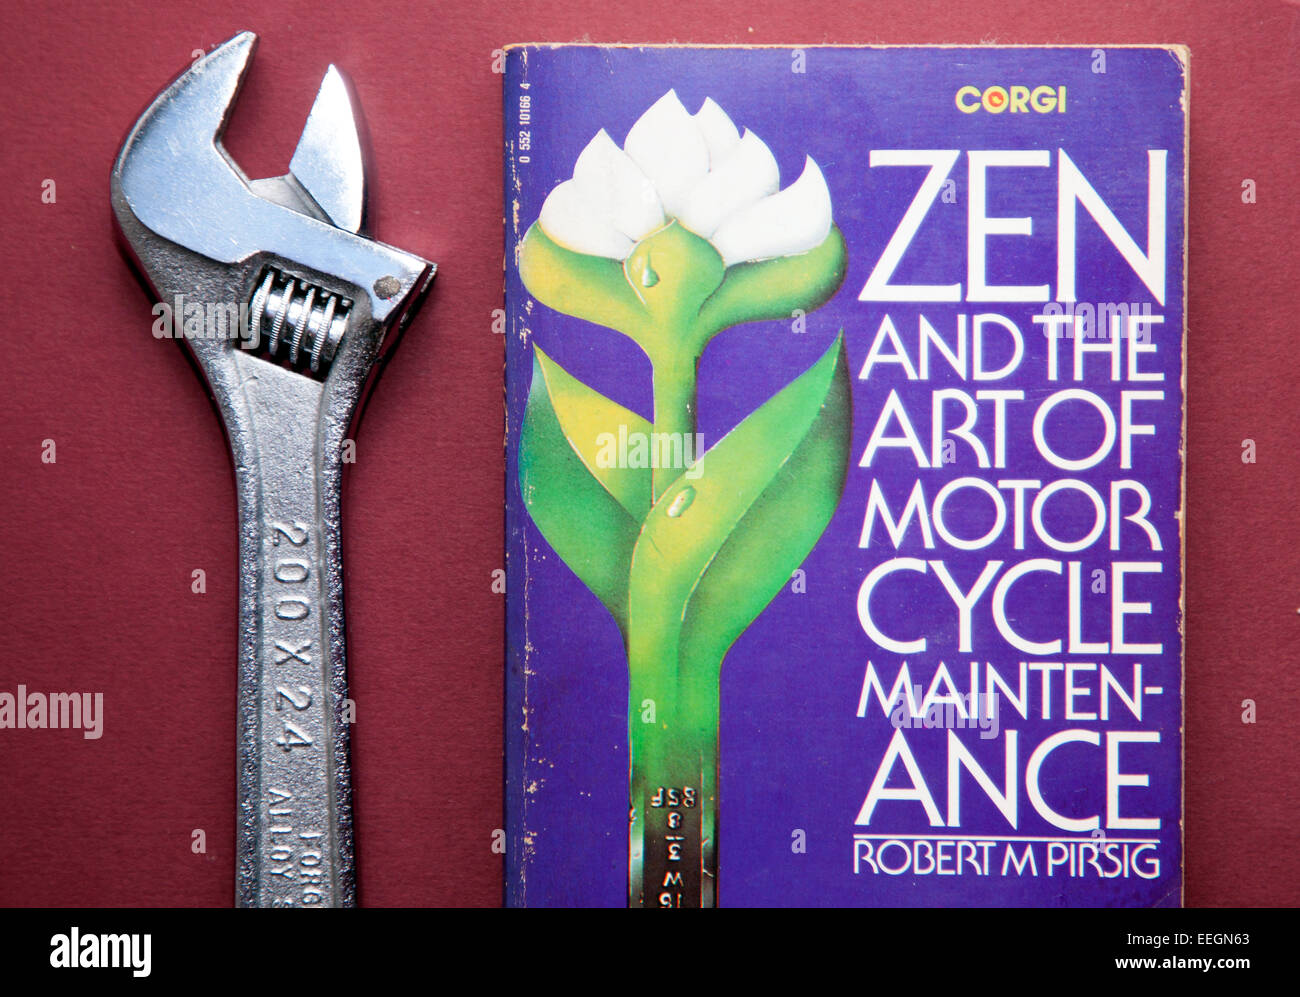 Zen und die Art of Motorcycle Maintenance durch Robert M Pirsig, Kultbuch aus den 1970er Jahren Stockfoto